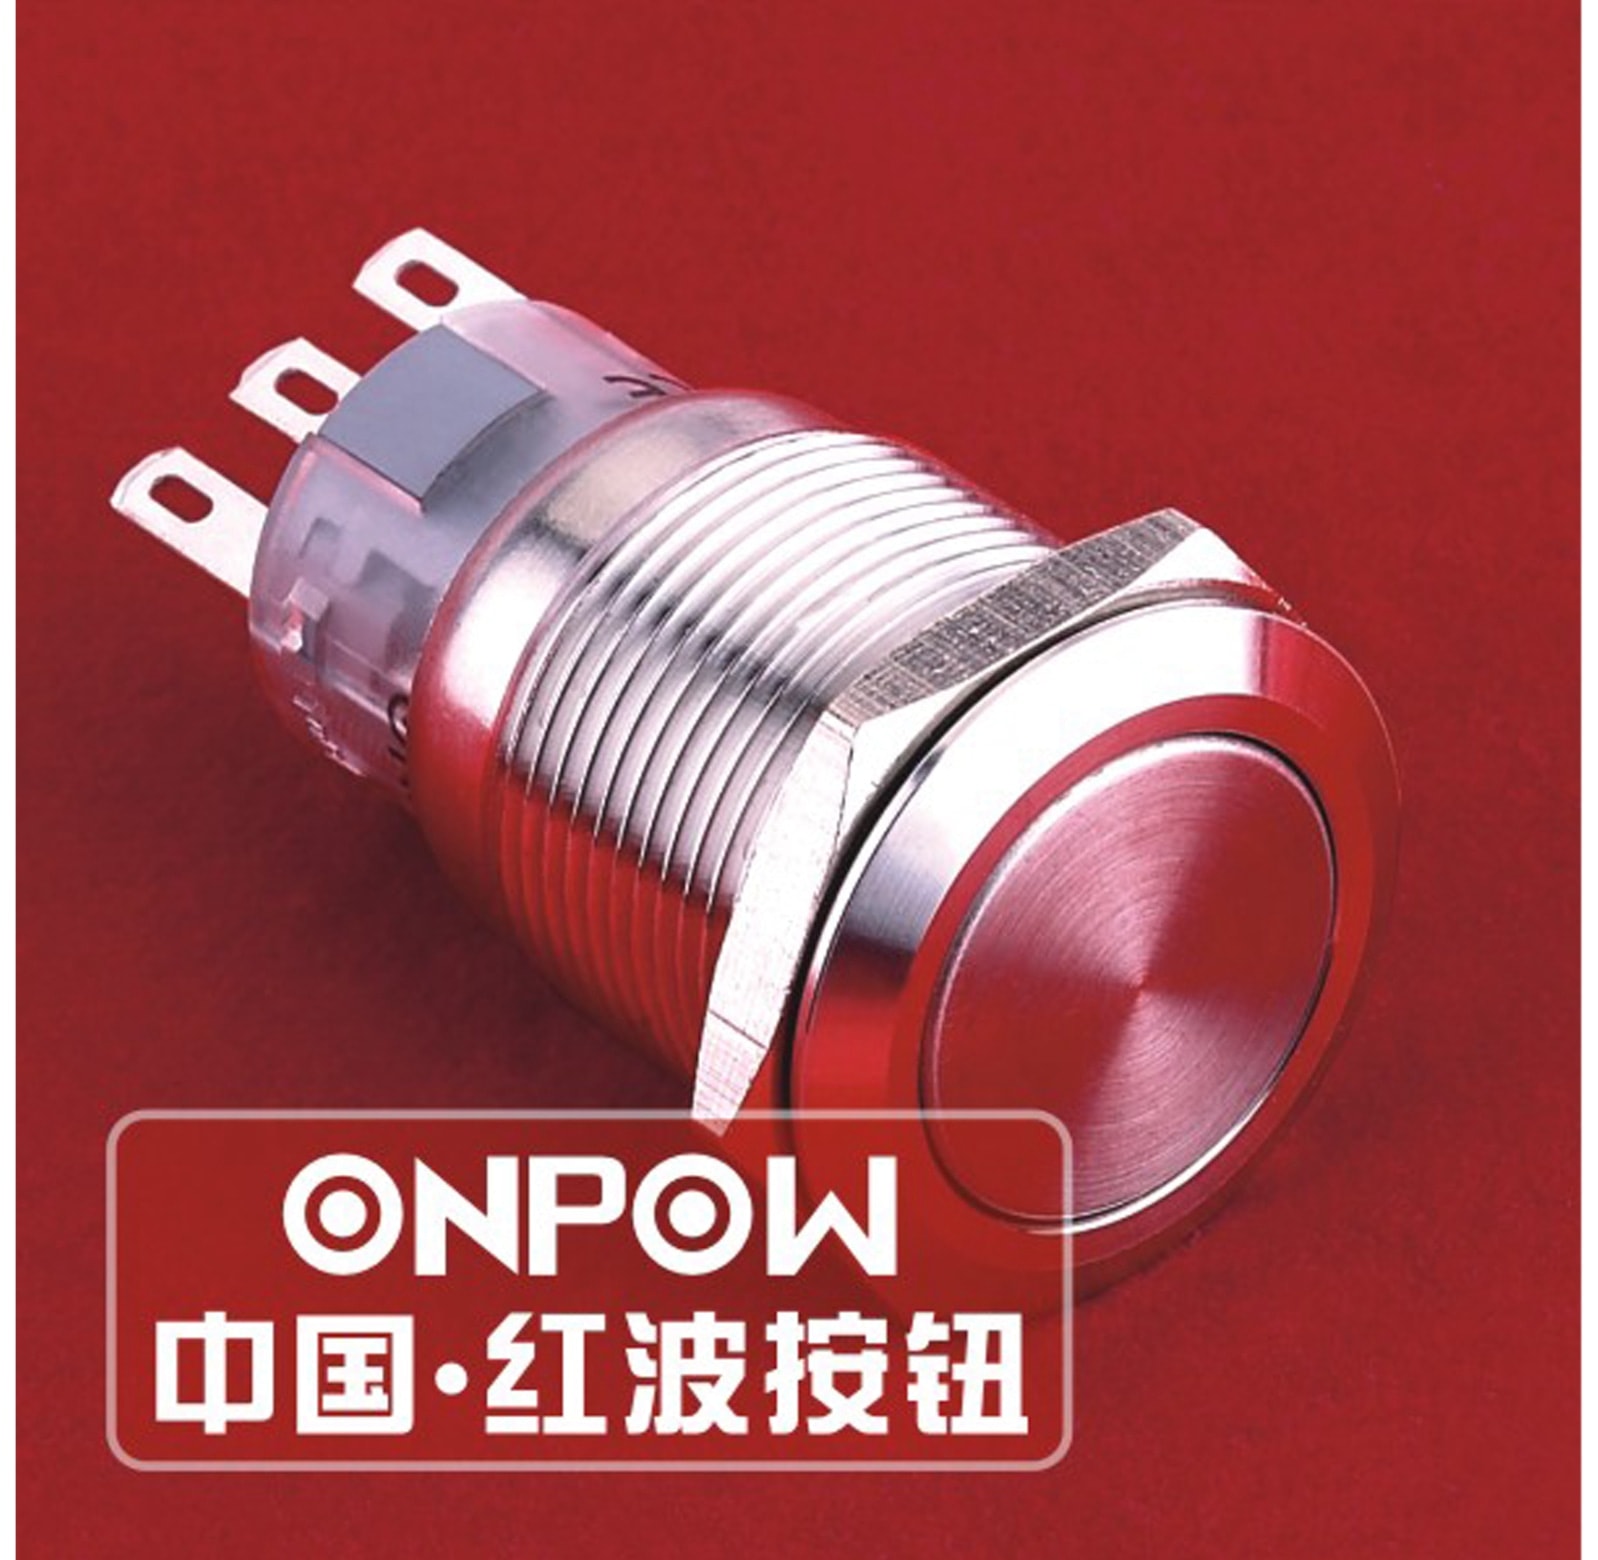 ONPOW Schalter, 24 V/DC, 1x Off/(On), Lötanschluss, flach rund, Edelstahl, 19 mm